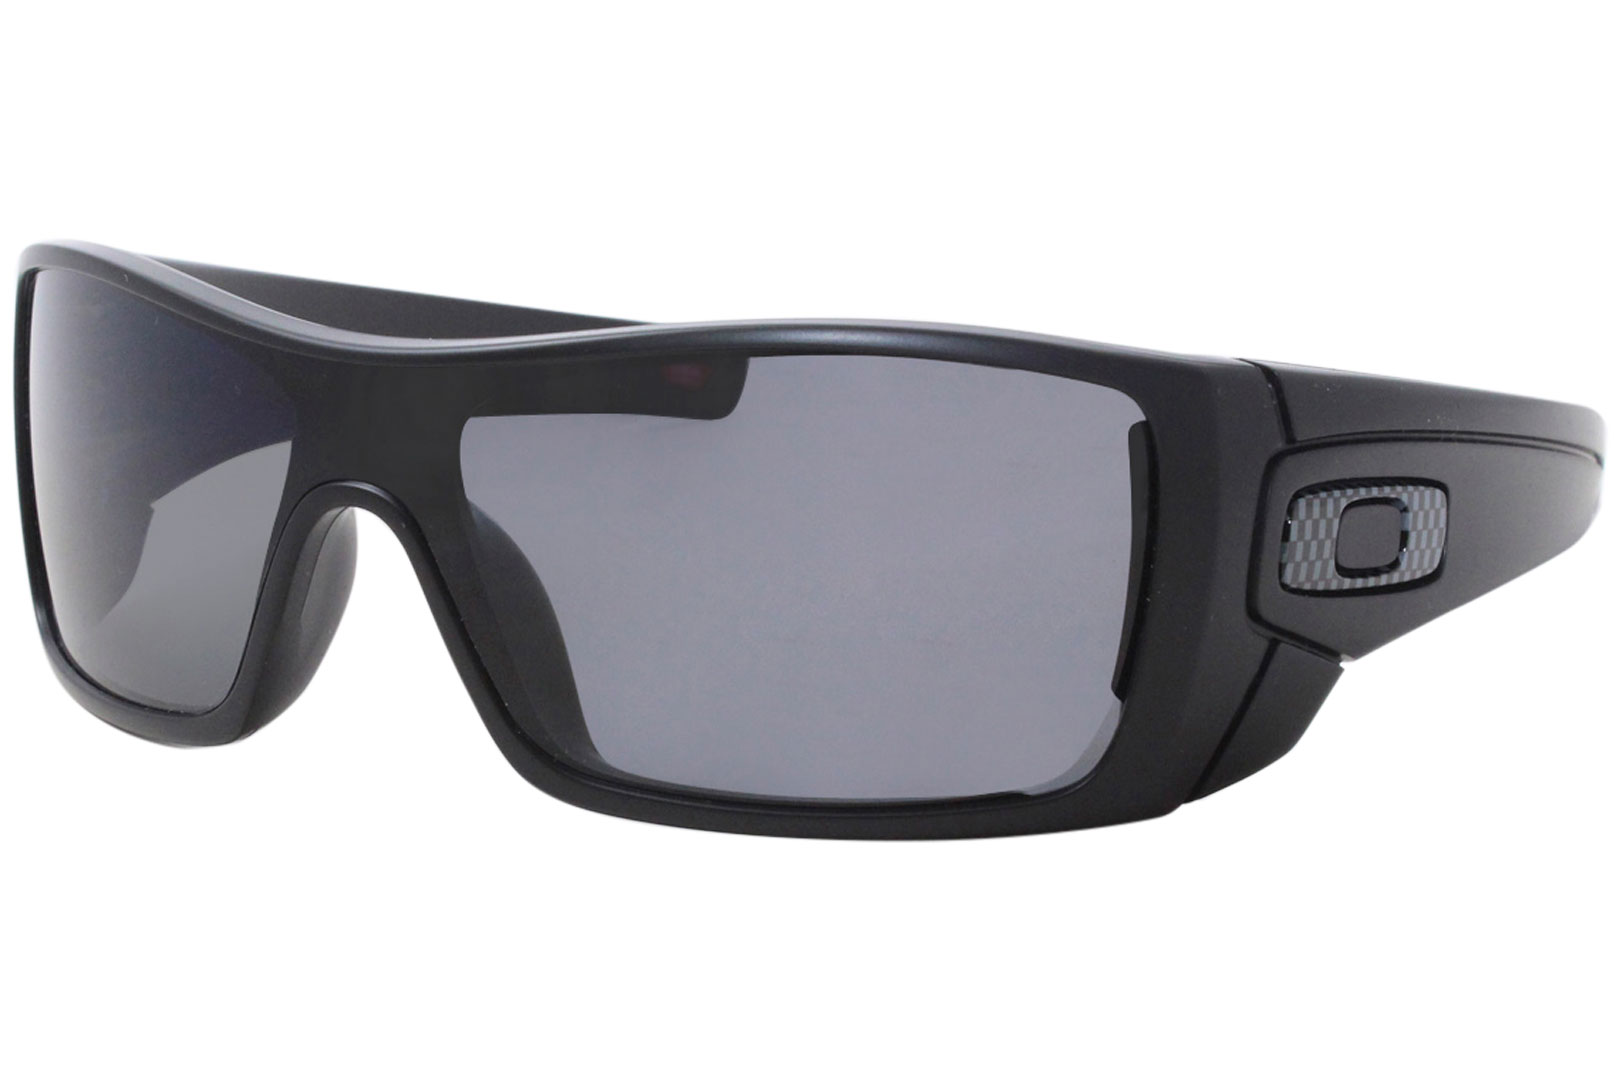 Oakley Batwolf OO9101-04 Sunglasses Men's Matte Black/Polarized Grey  27-127-130 